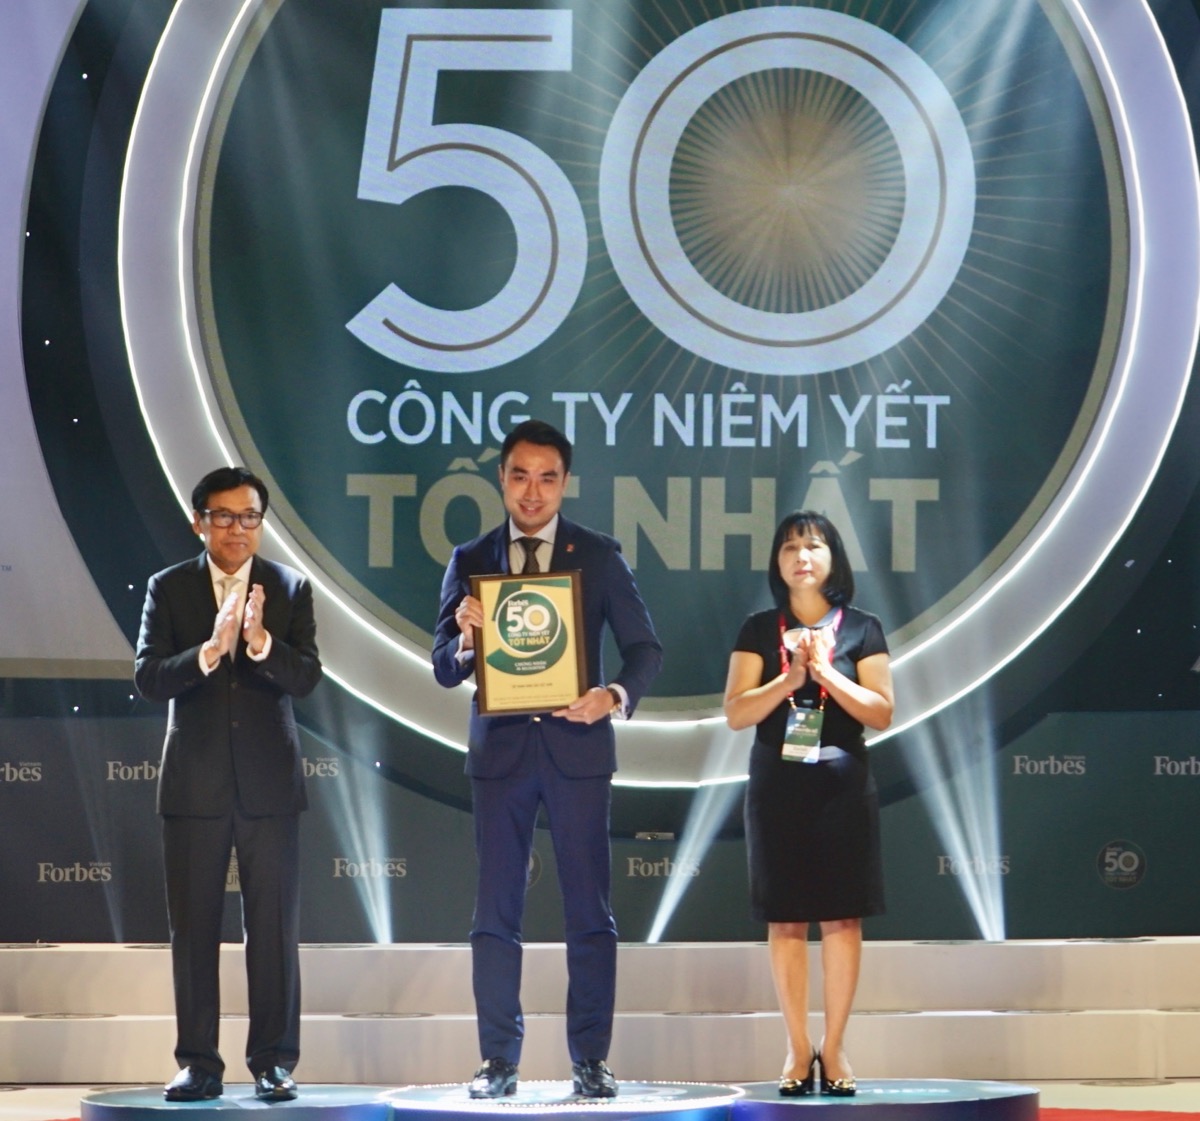 Trưởng ban Quản trị Rủi ro HĐQT Petrolimex Trần Tuấn Linh đại diện Petrolimex dự Lễ vinh danh và nhận Kỷ niệm chương "50 công ty niêm yết tốt nhất Việt Nam năm 2019"